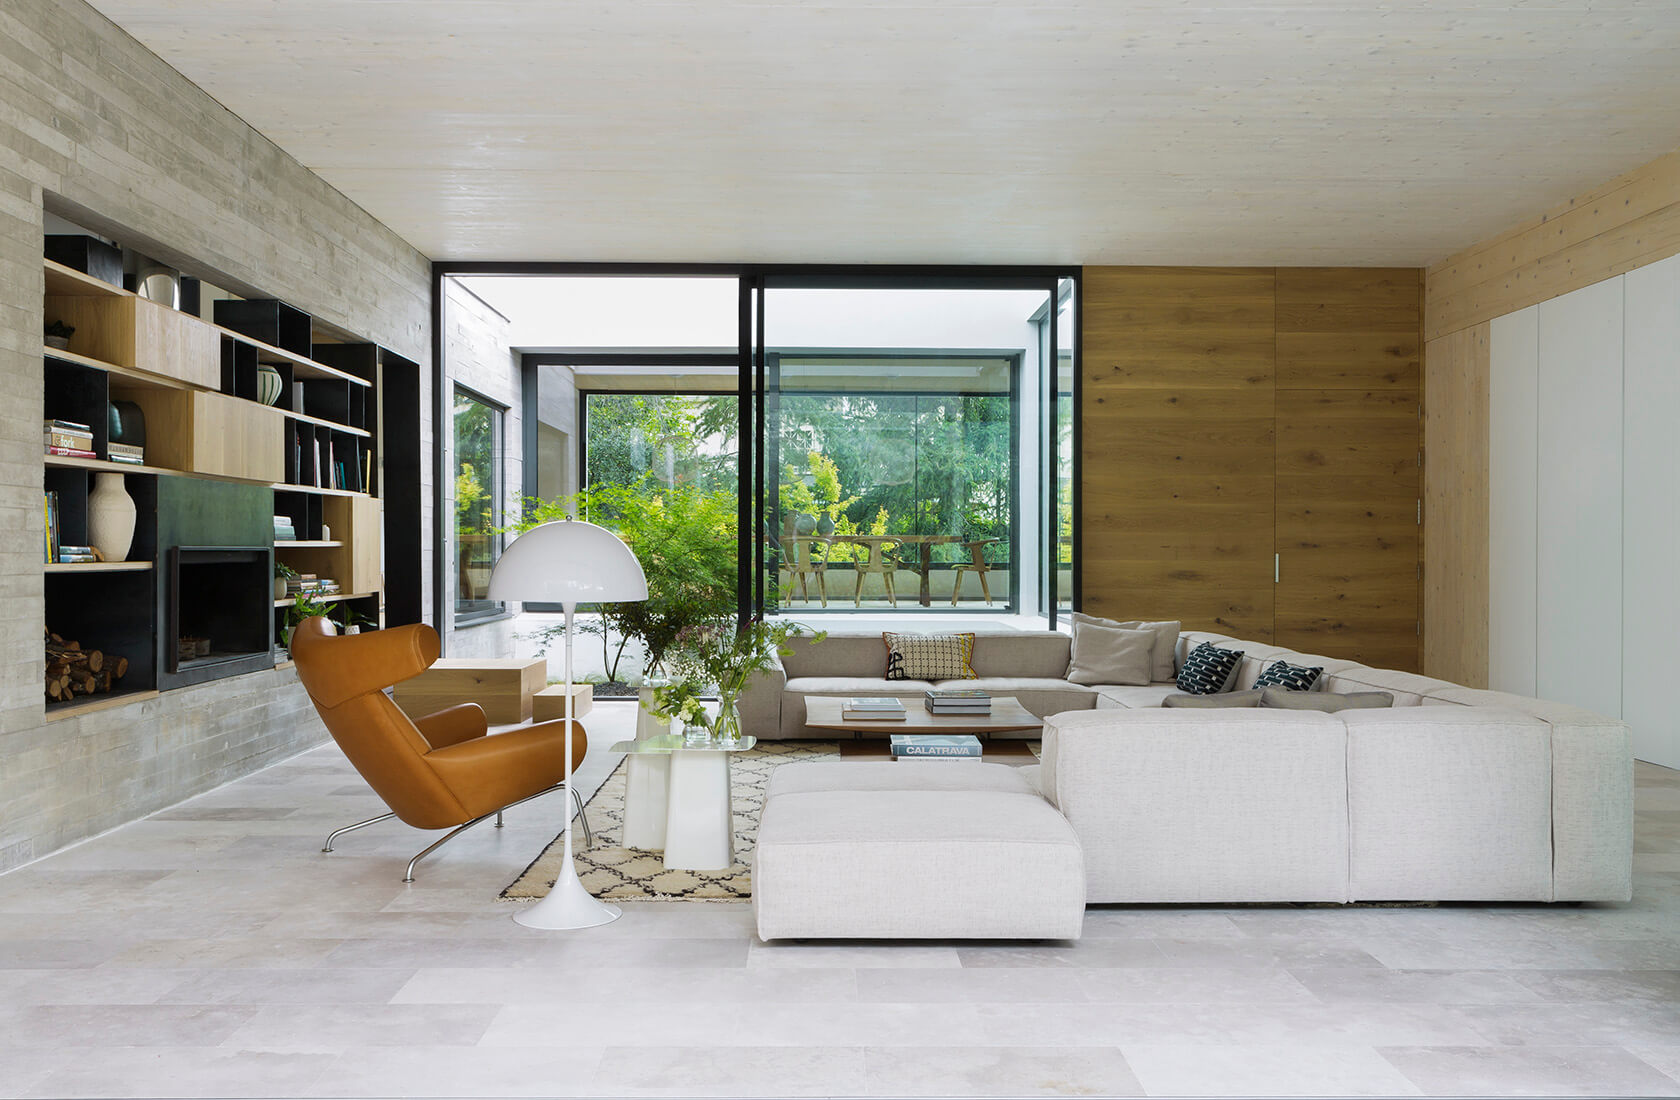 Casa Proyecto CH - Espanha. Sala de estar com sofa grande e cinza, poltrona couro marrom, tapete bege com preto, laje de concreto aparente e portas grandes do piso ao teto com vista para a natureza.